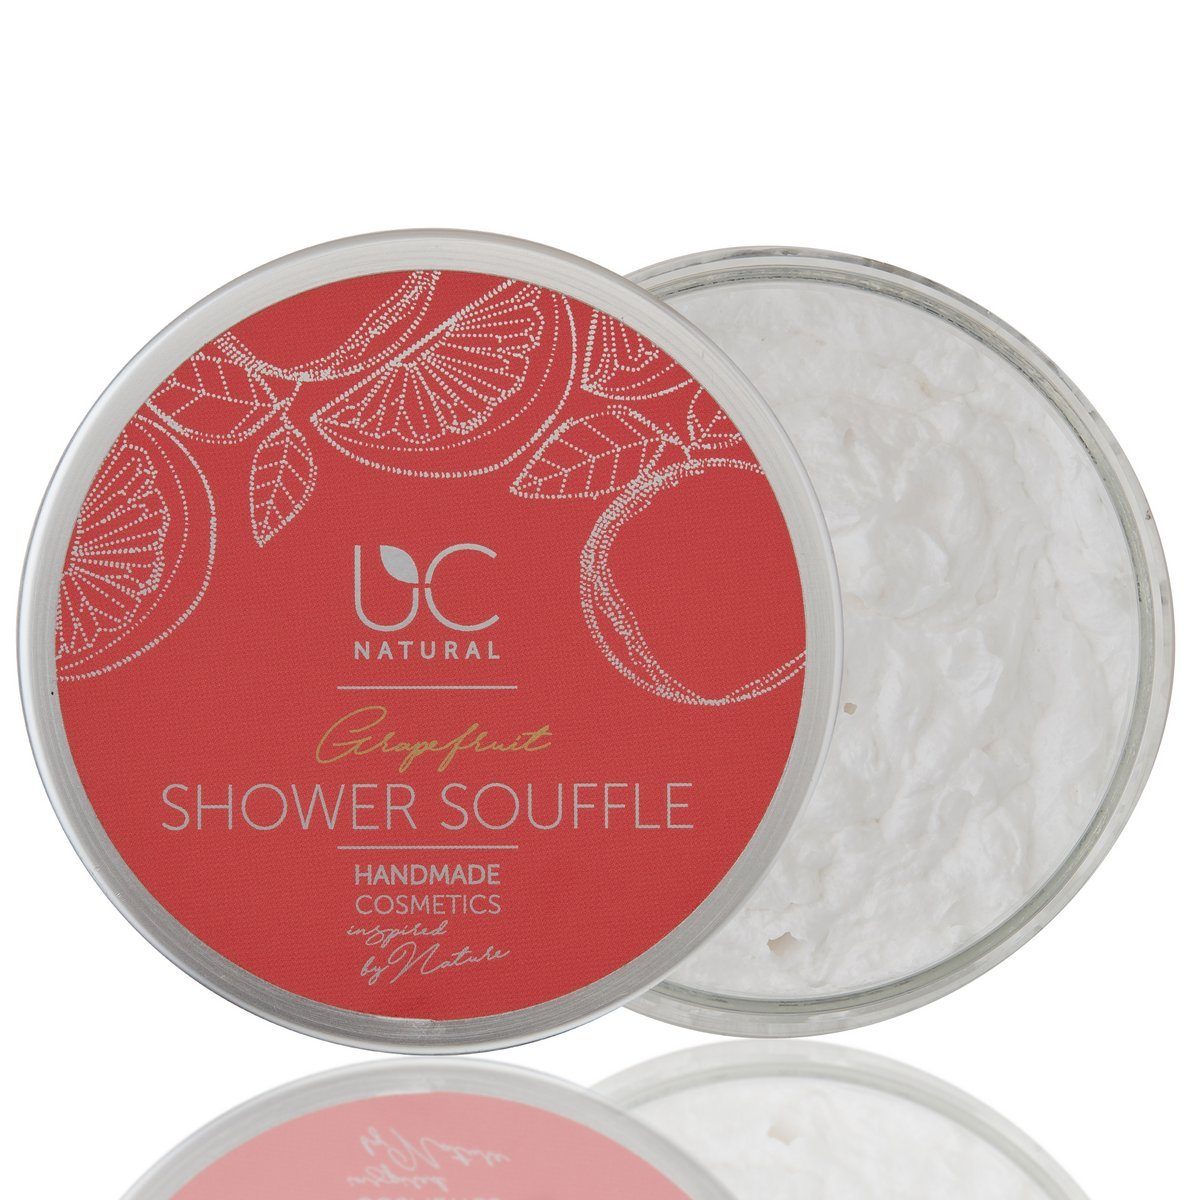 Natural UC UC 1-tlg., handgemacht Grapefruit Duschpflege Natural 150g Shower Shower Souffle, Soufflé vegan